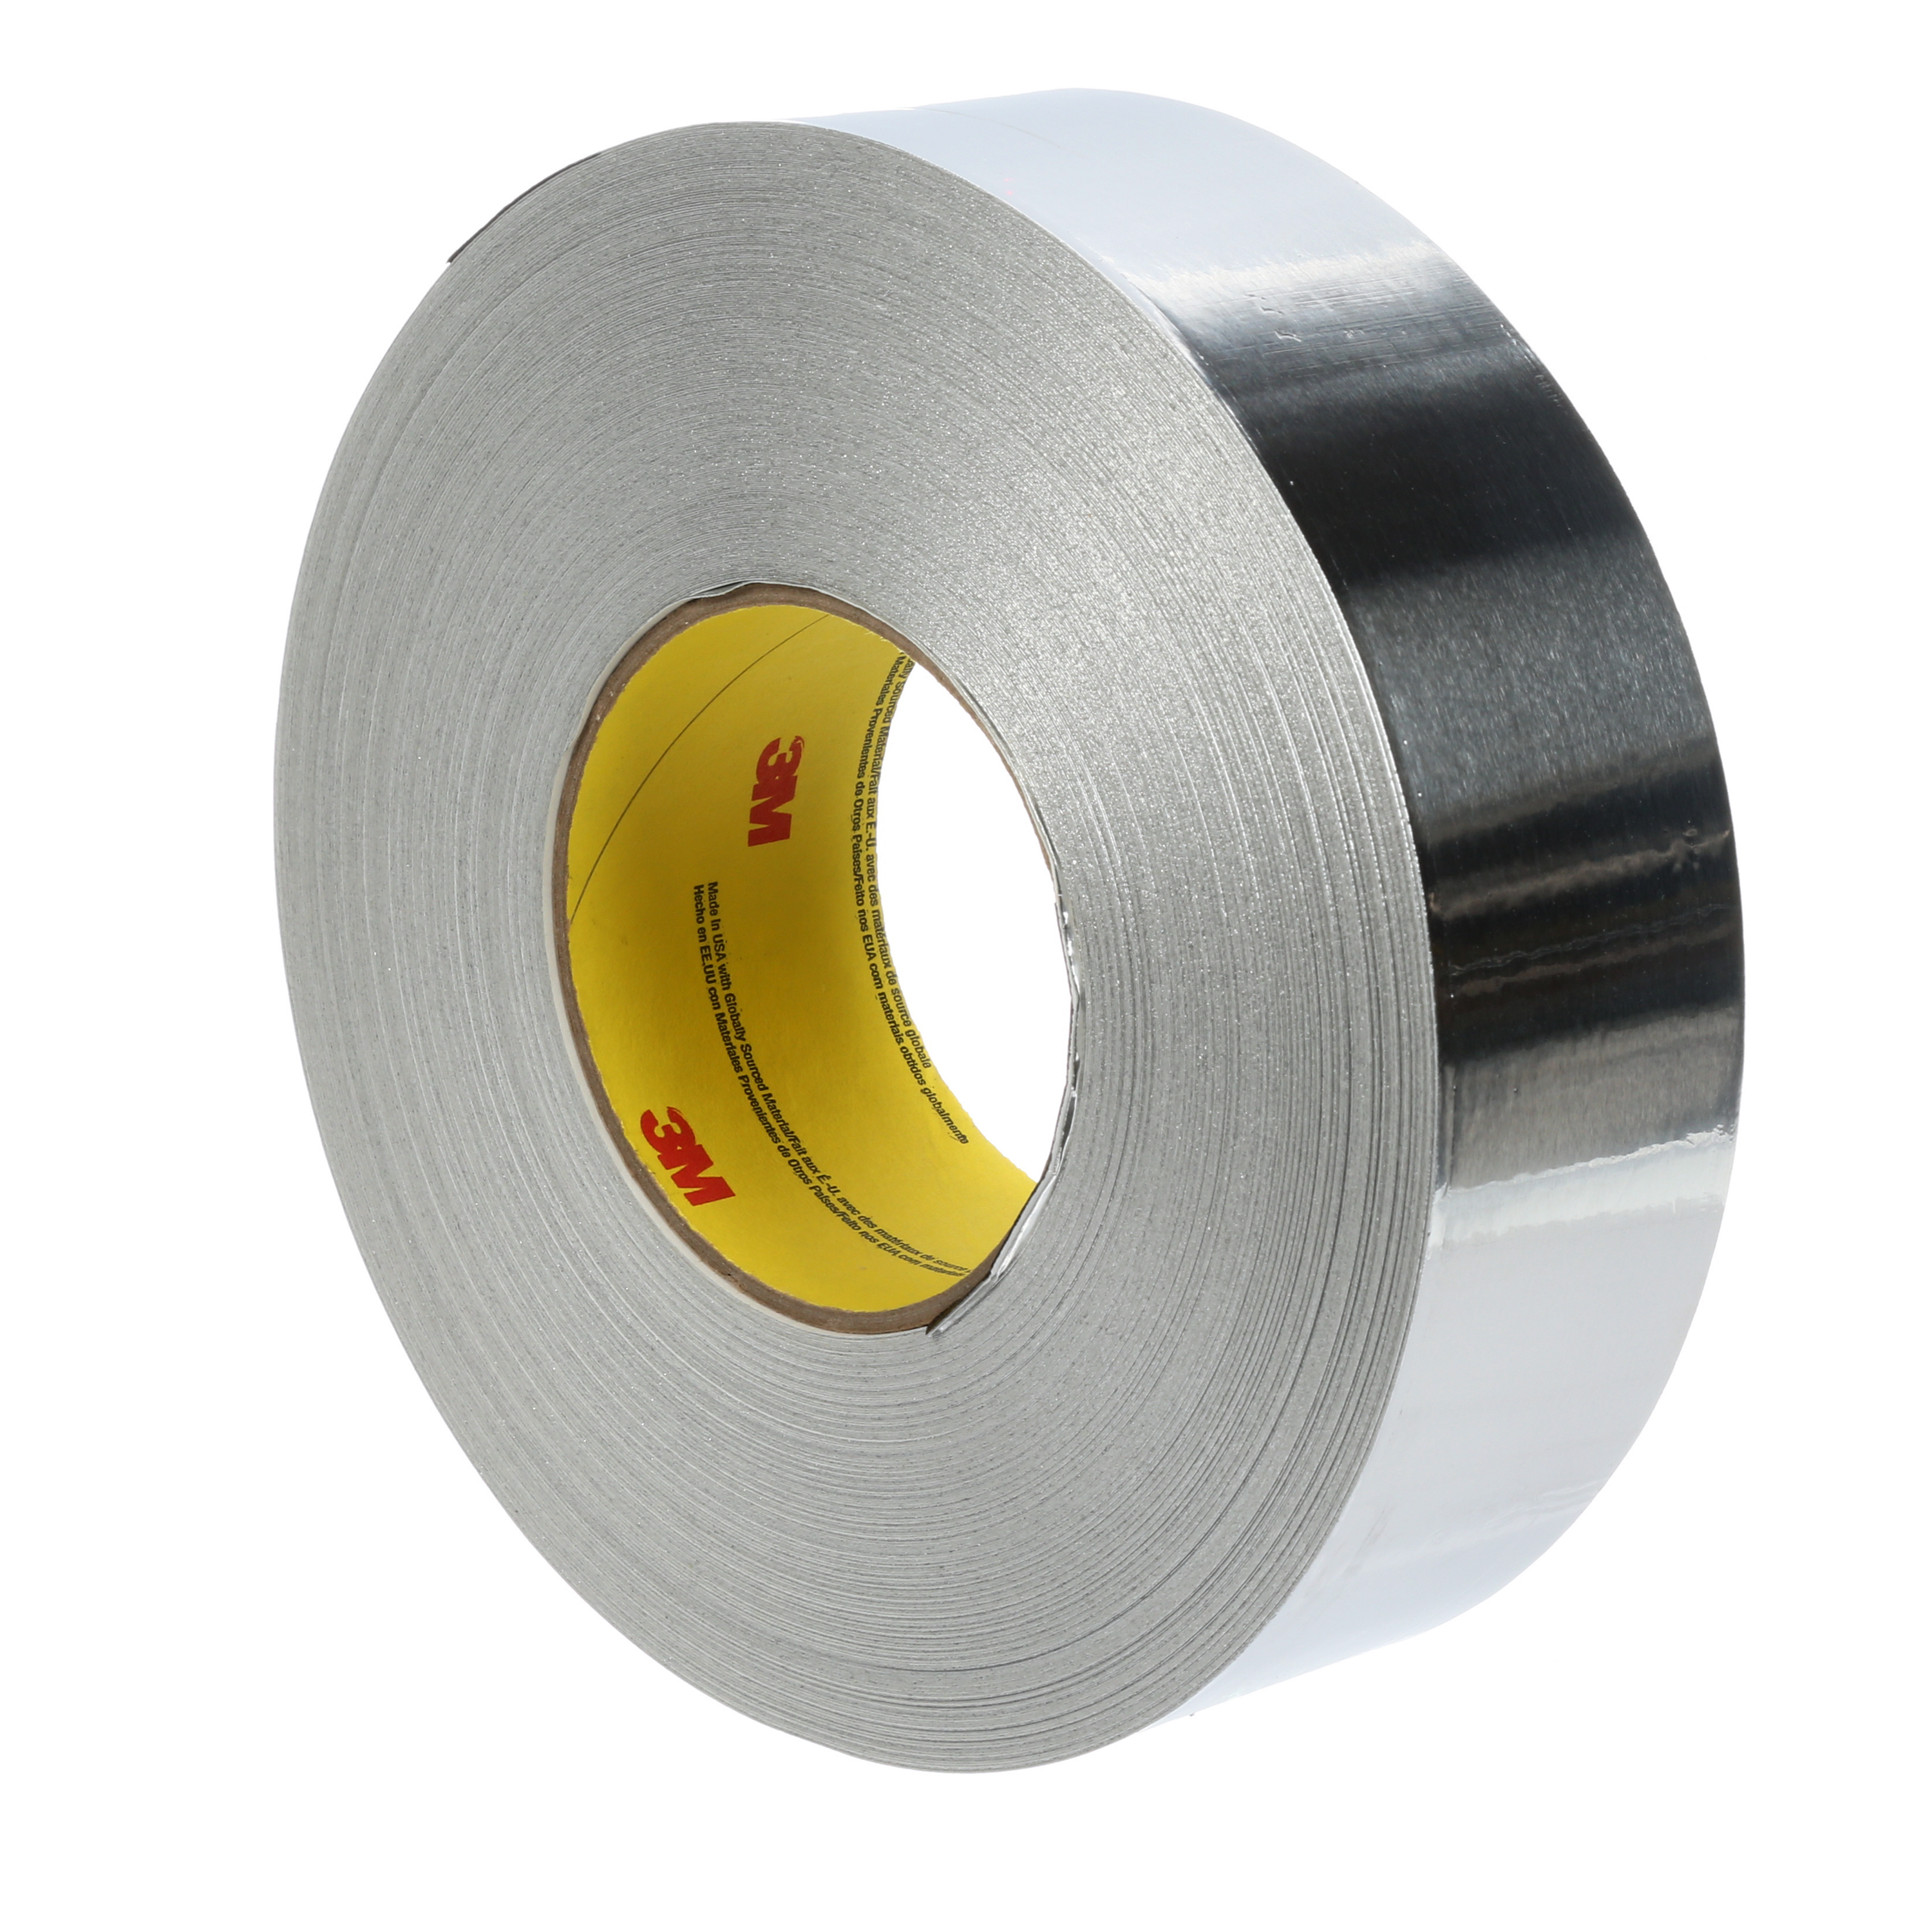 3M 96021, Aluminum Foil Tape 2C120, Silver, 99 mm x 45.7 m, 1.8 mil, 7100043891